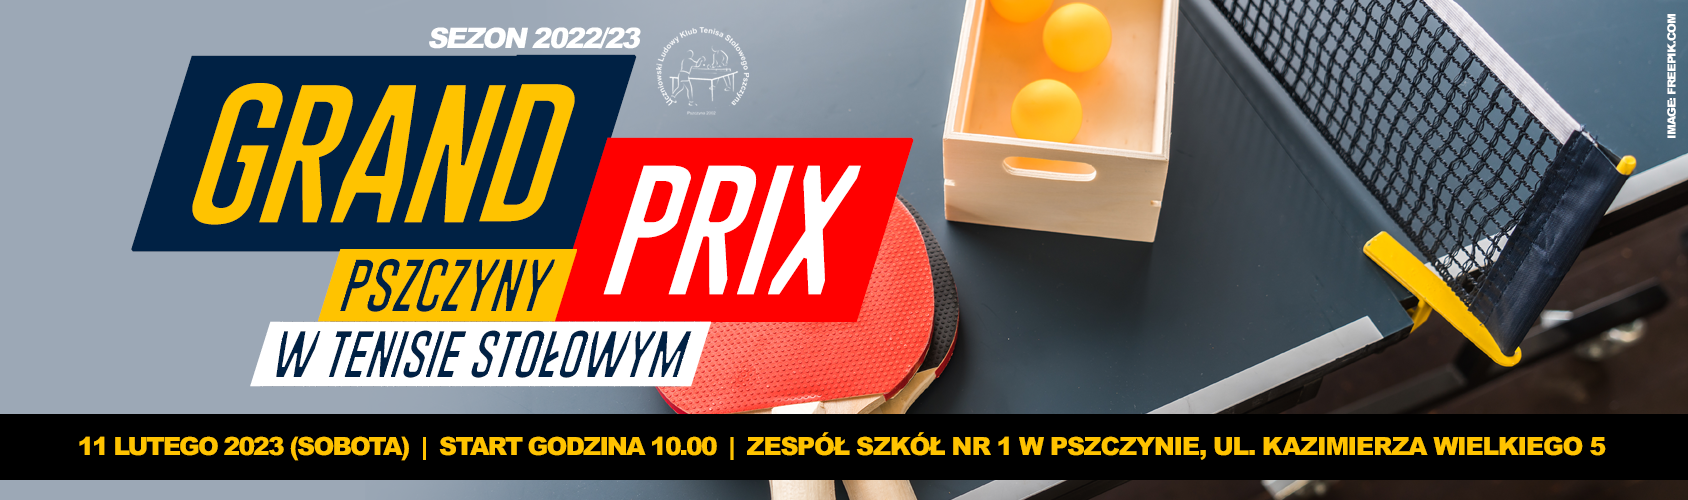 Grand Prix Pszczyny w Tenisie Stołowym - baner informacyjny